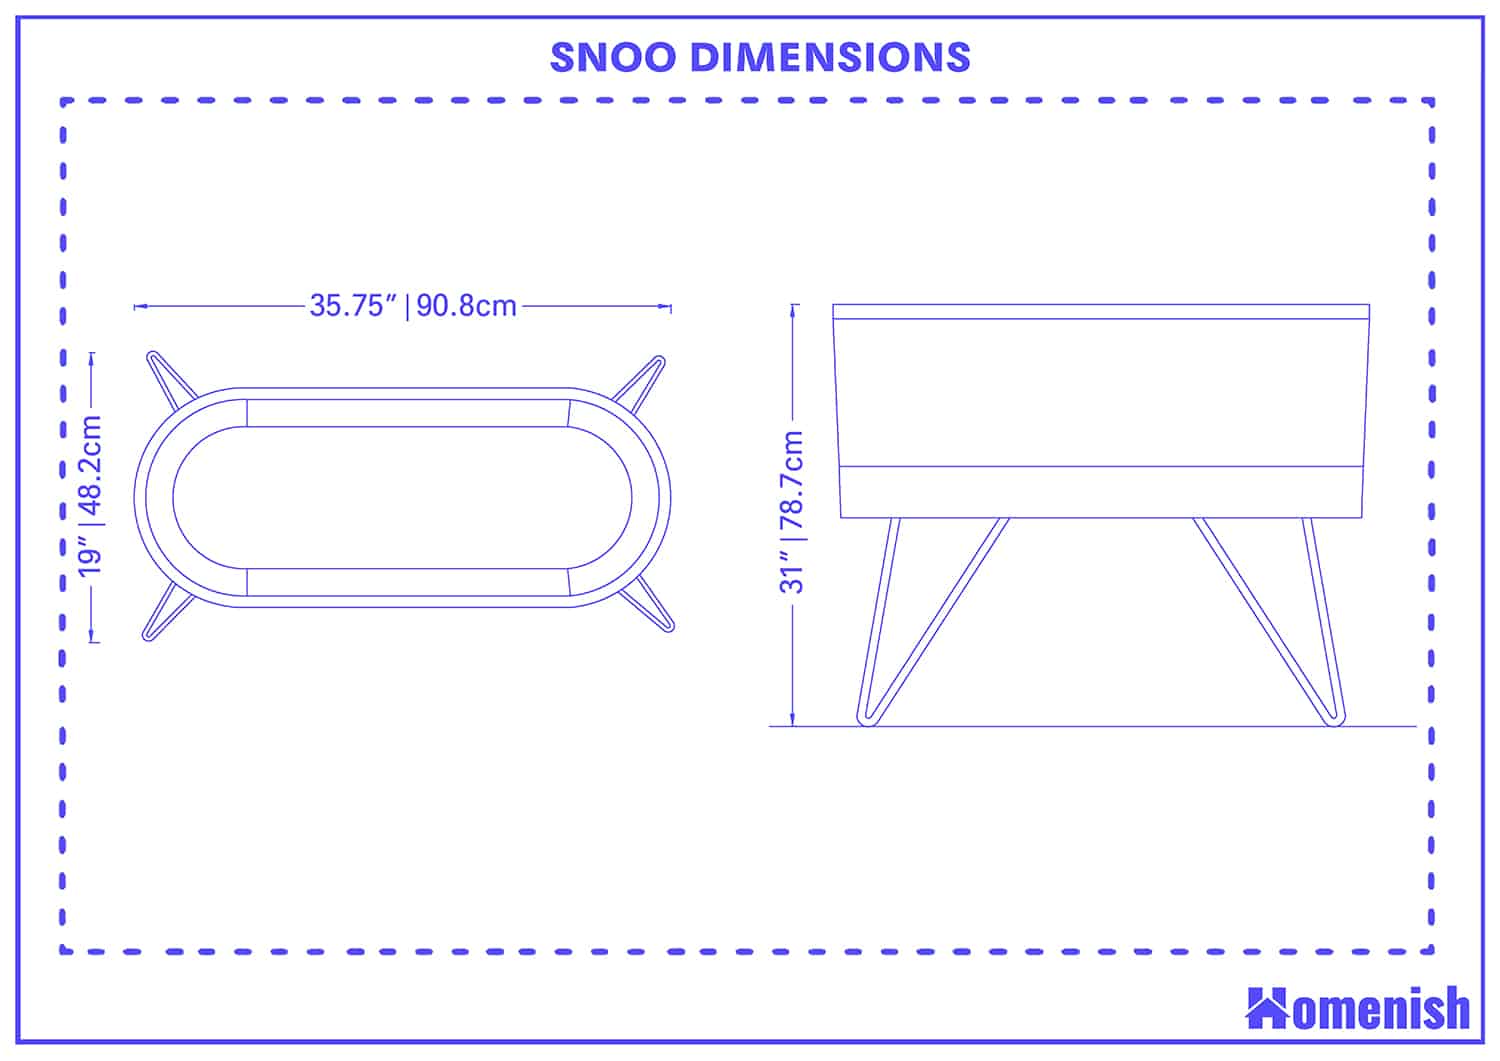 SNOO Dimensions